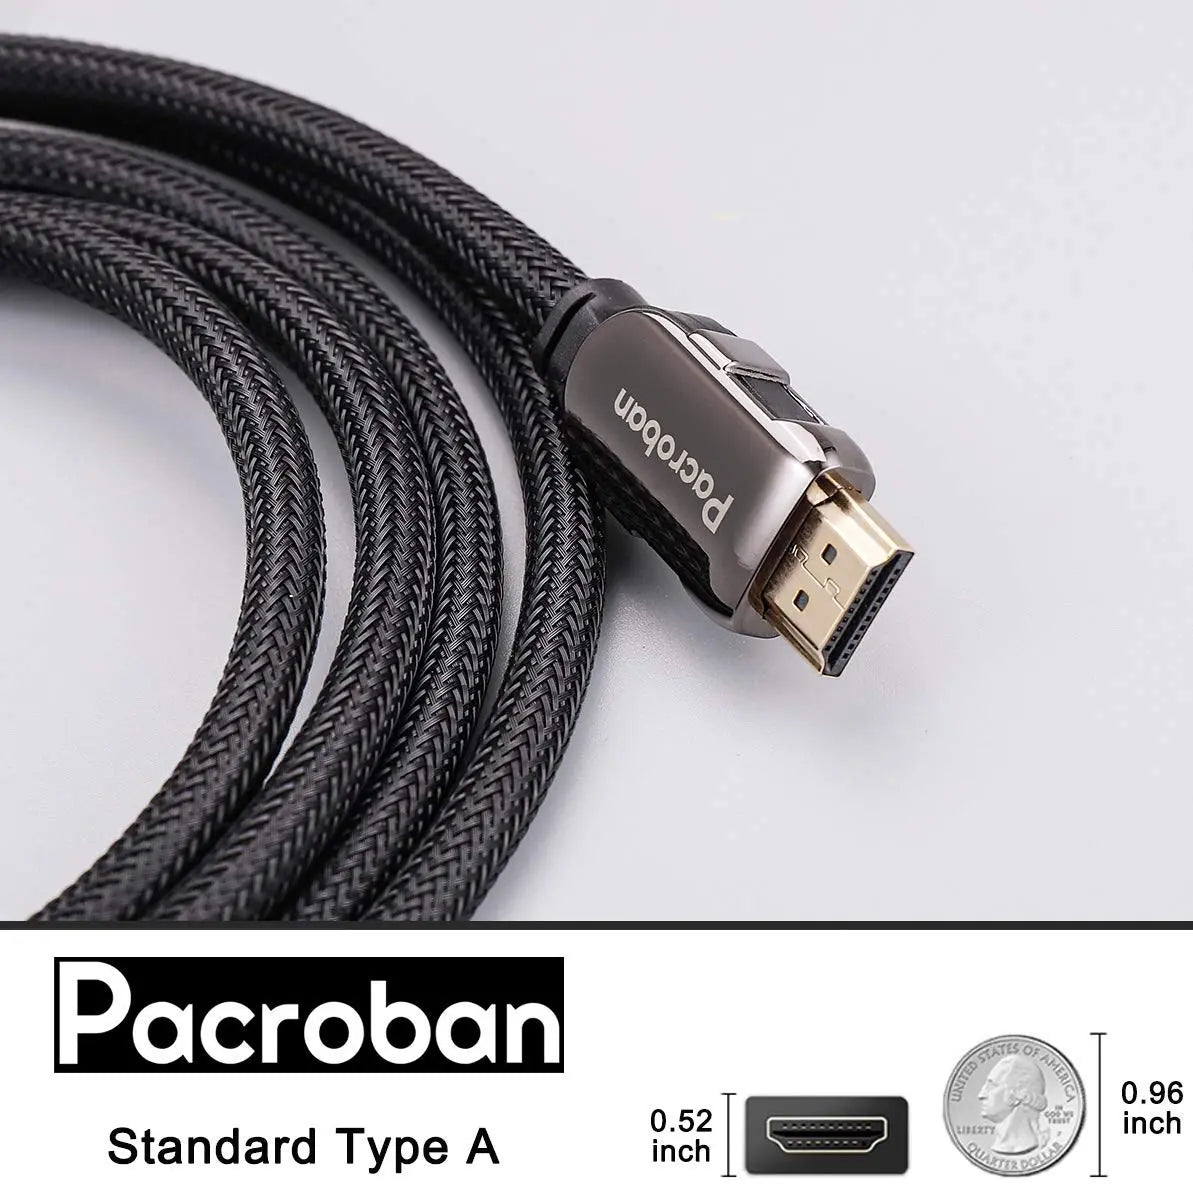 Silvertec HDMI 2.1 Ultra HD 10K Cable (1m/2m/3m), Shop PWP